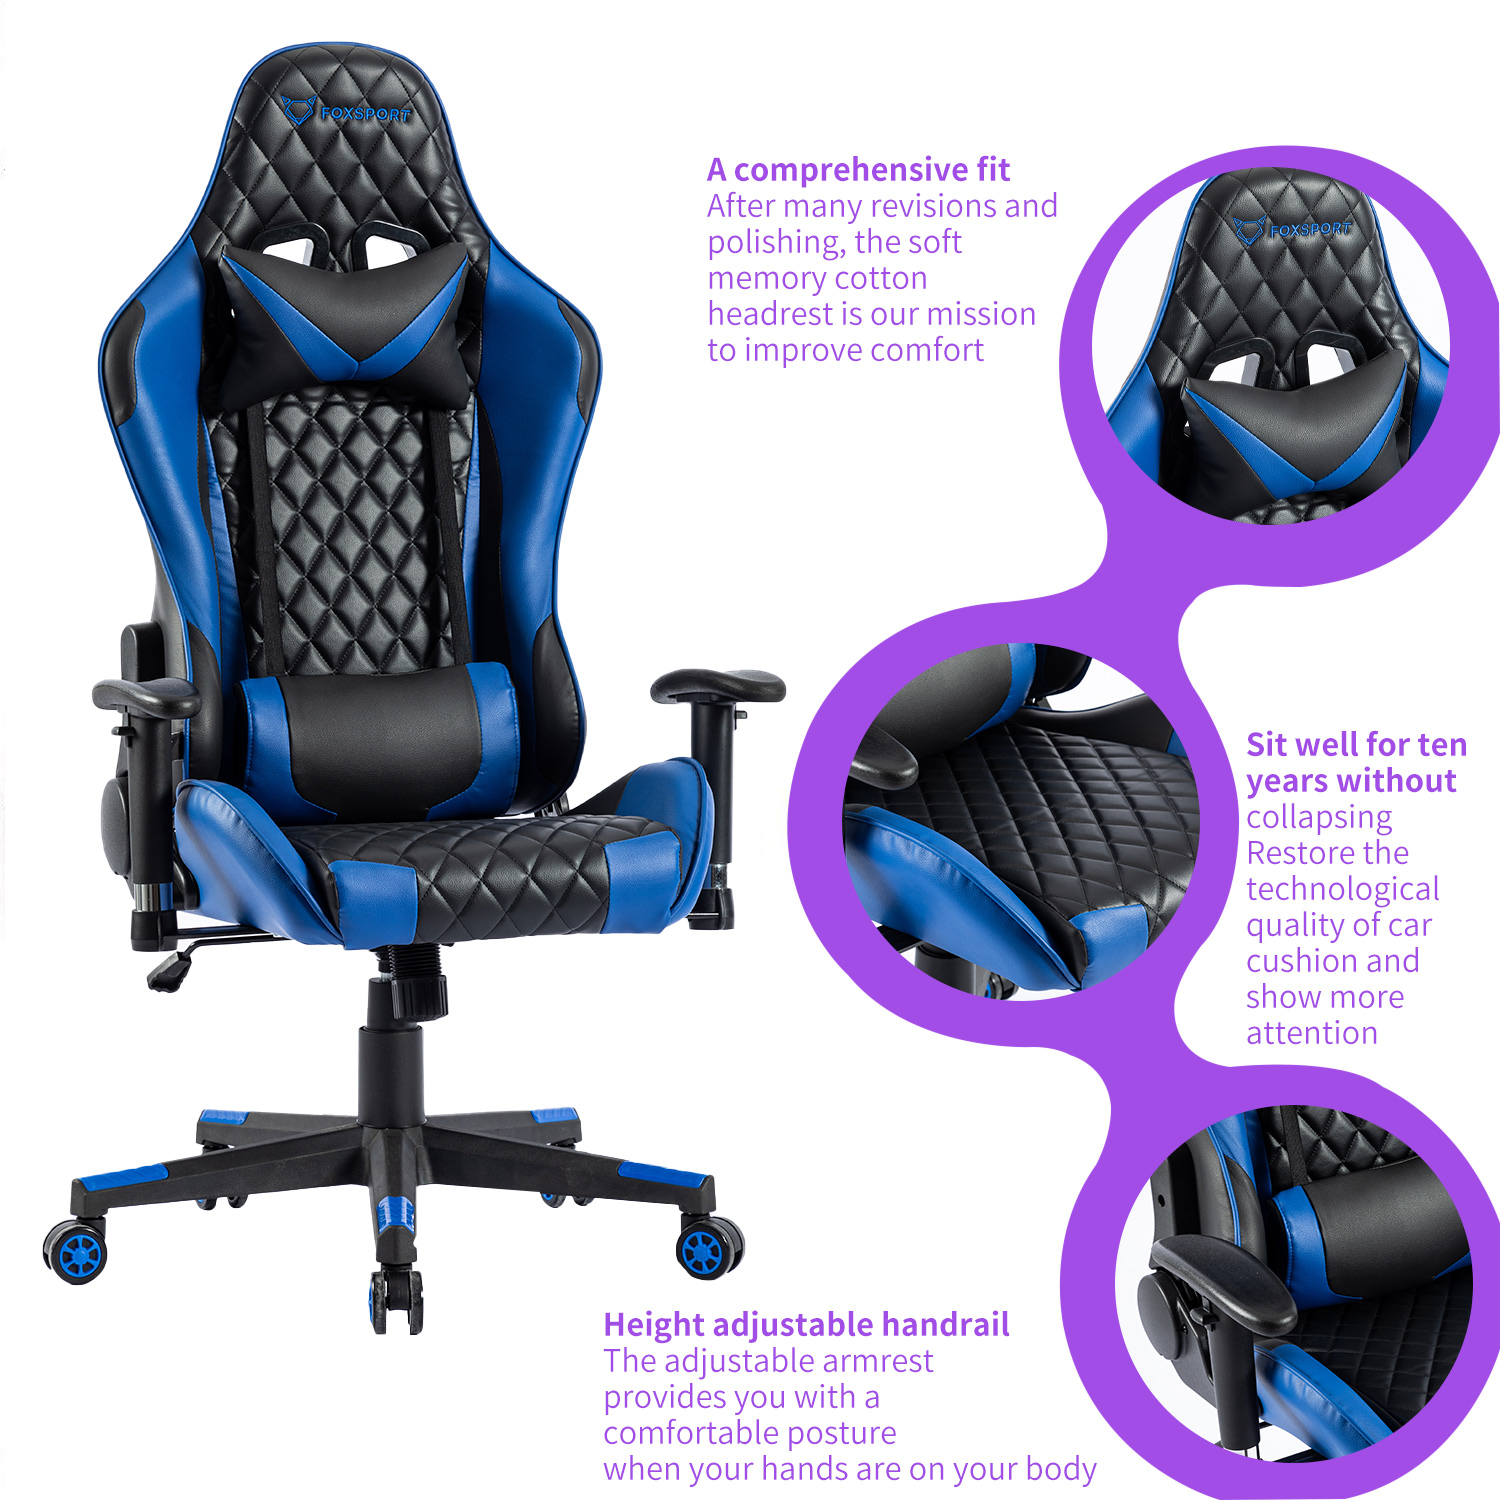 Stuhl Gaming und FOXSPORT Stuhl, Gaming Blau Lendenkissen Blau Kopfstütze mit